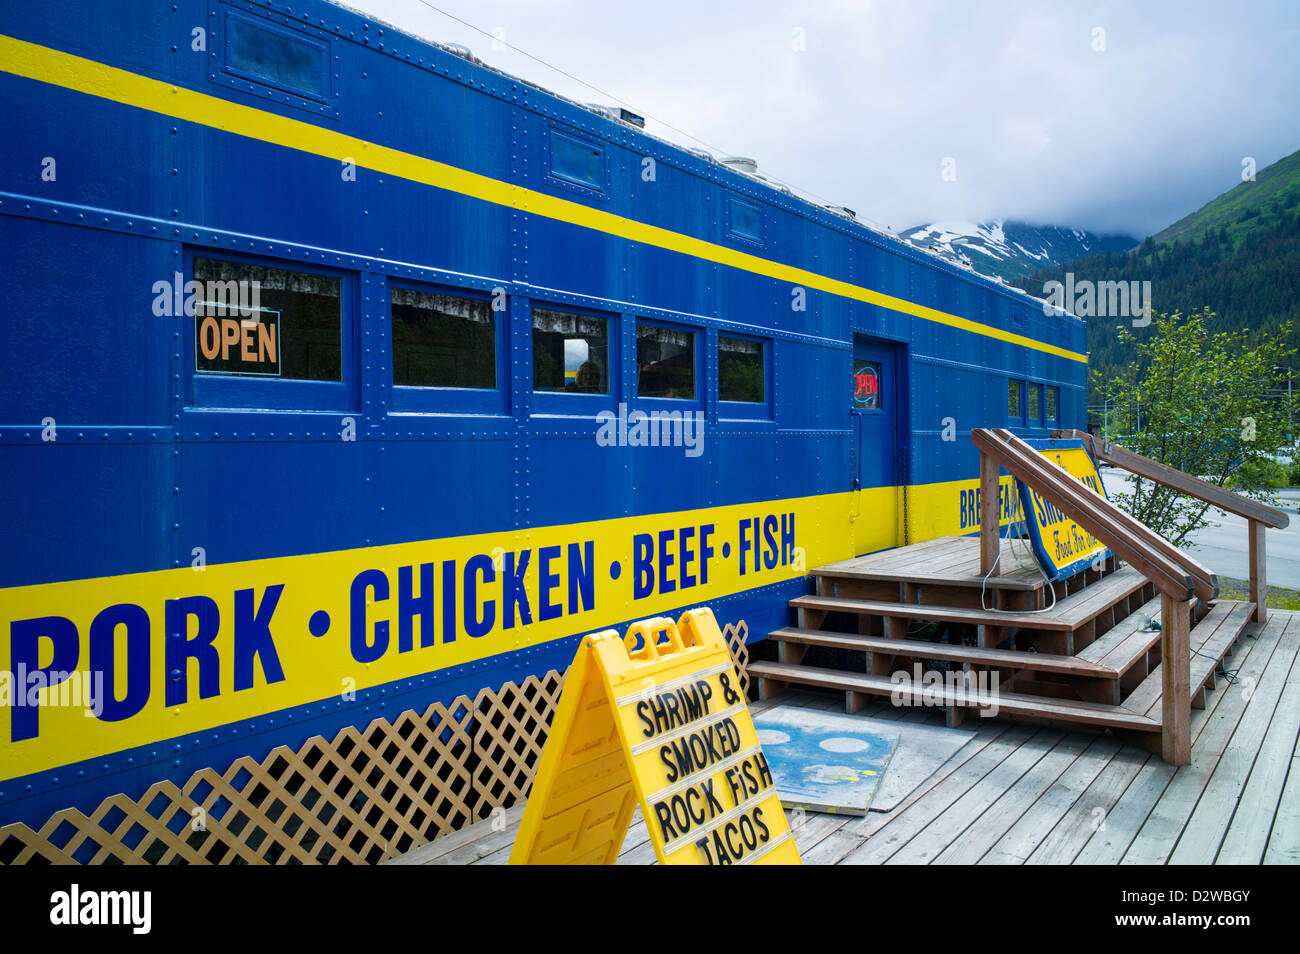 L'accident de train, collection de wagons rénovés de l'Alaska Railroad désormais un centre de Smoke Shop Café, magasin de vélos et Seward, AK Banque D'Images